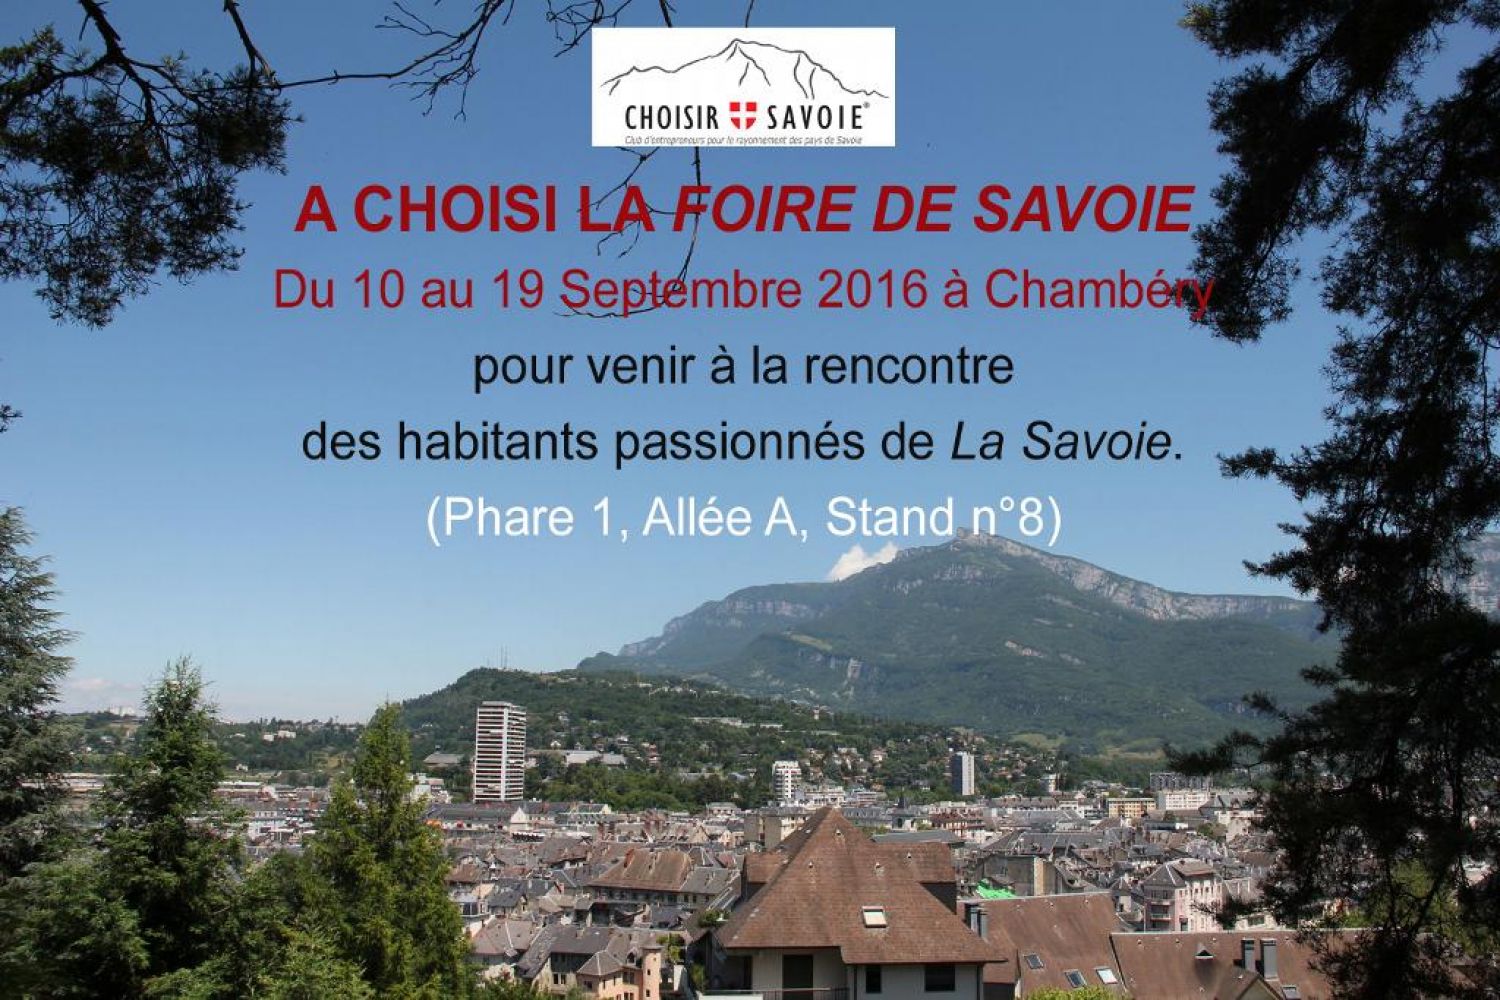 CHOISIR SAVOIE présent à la Foire de Savoie, du 10 au 19 septembre 2016